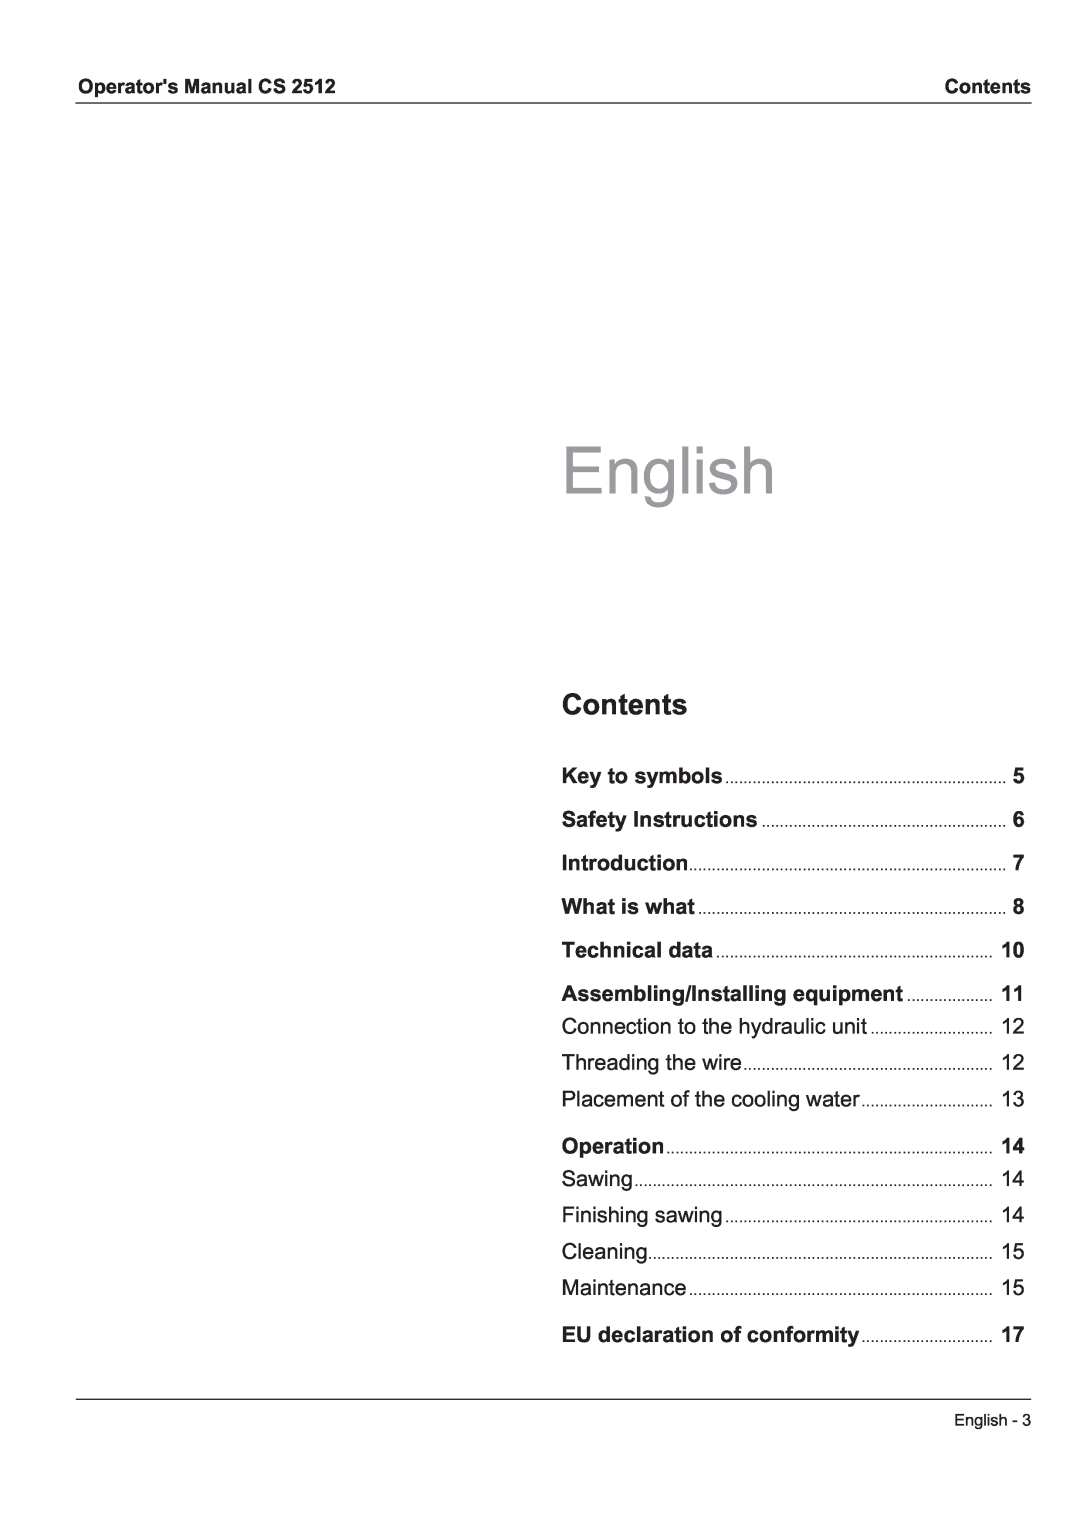 Husqvarna CS 2512 manual English, Contents 